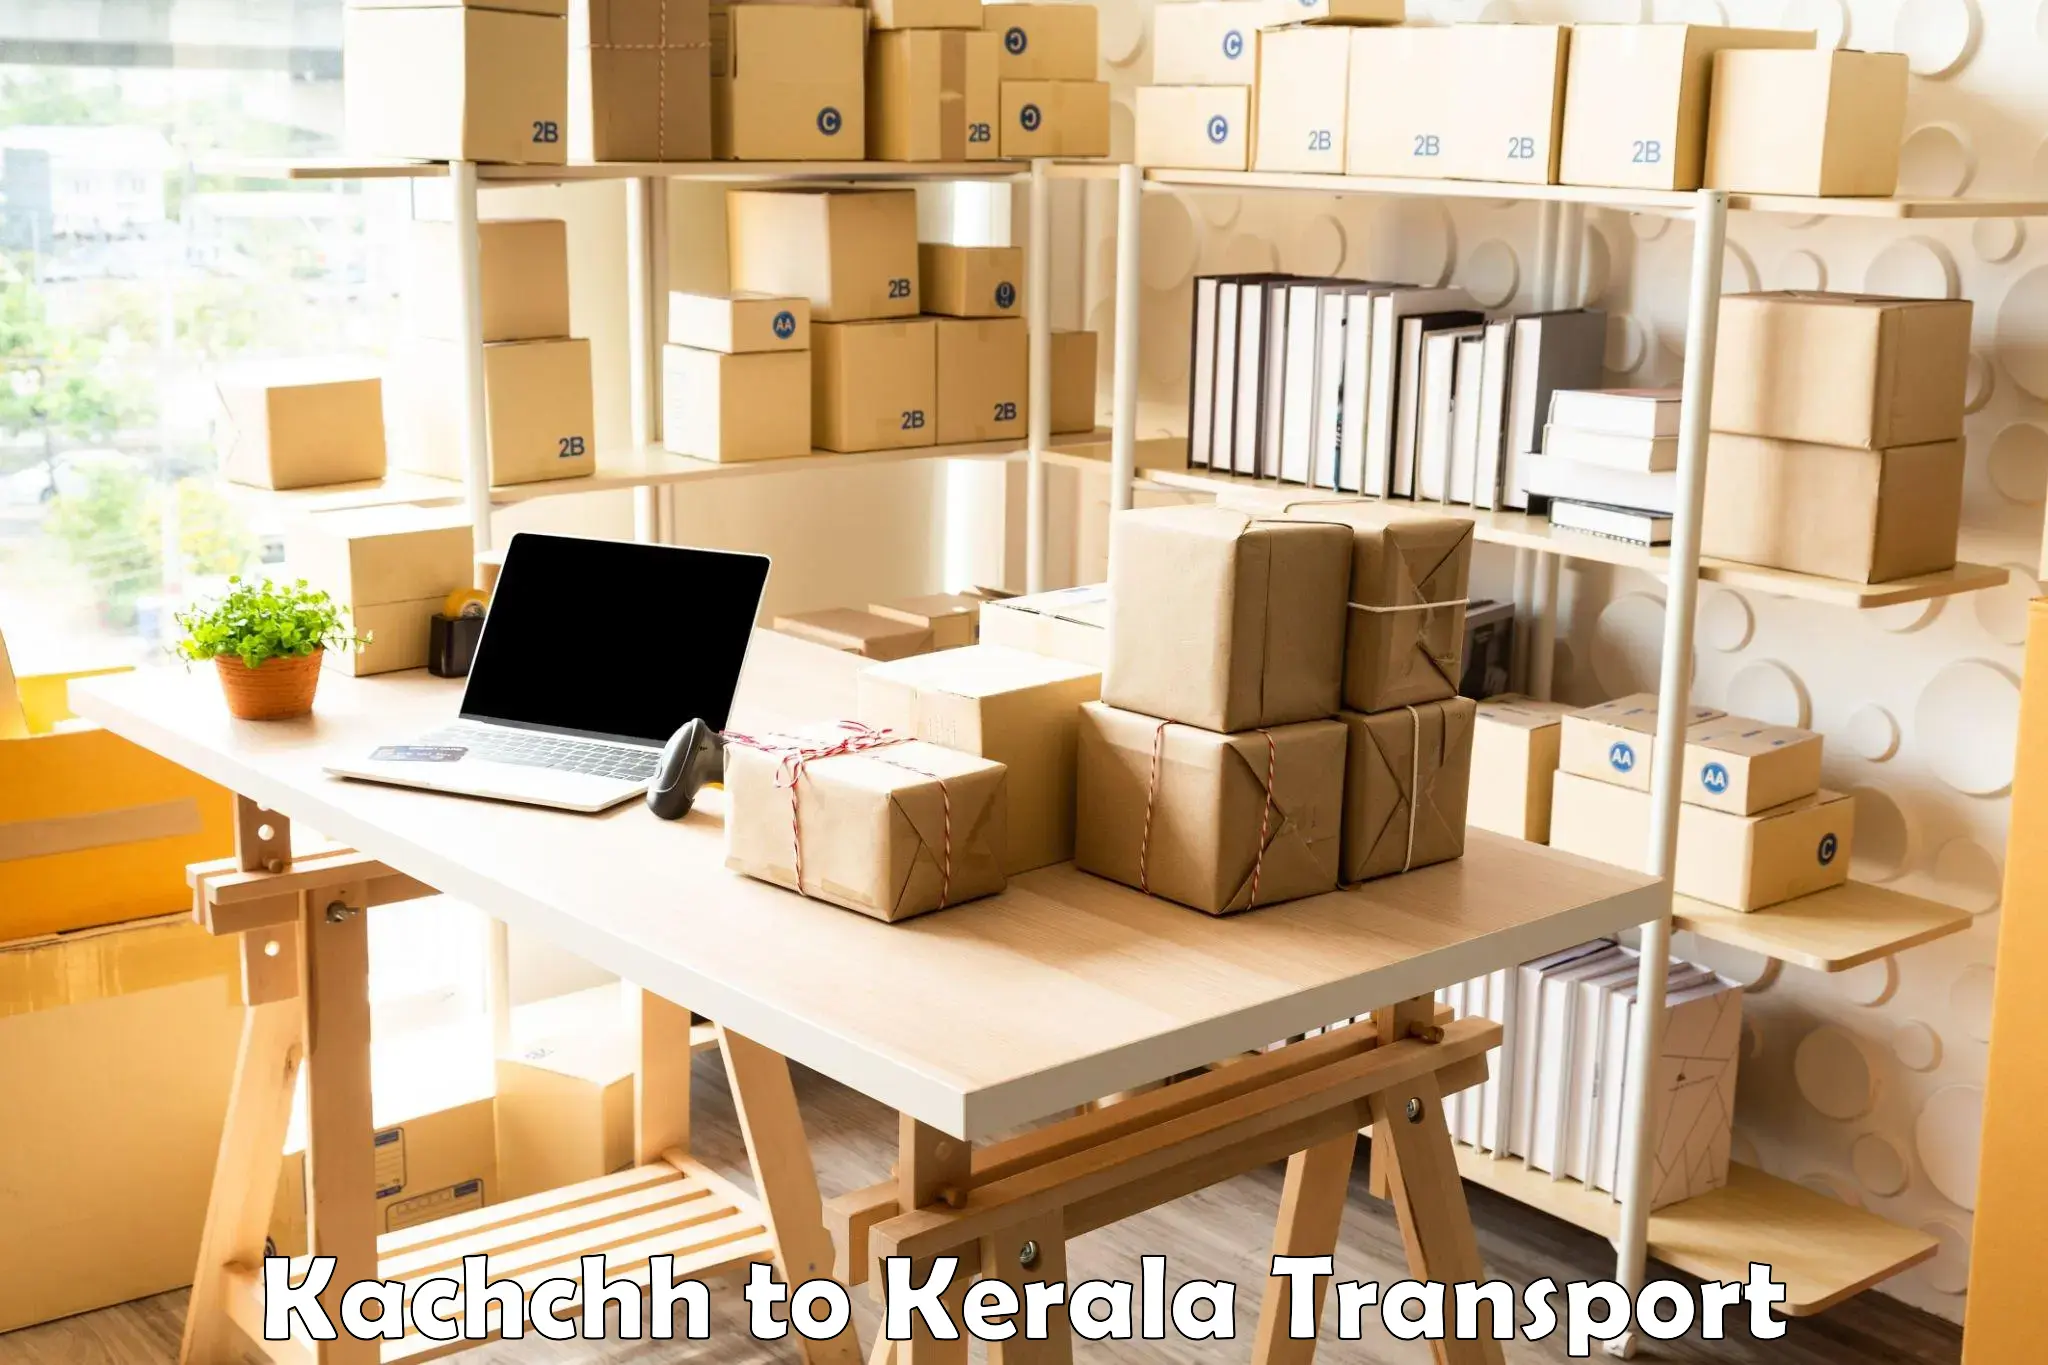 Daily transport service Kachchh to Thrissur